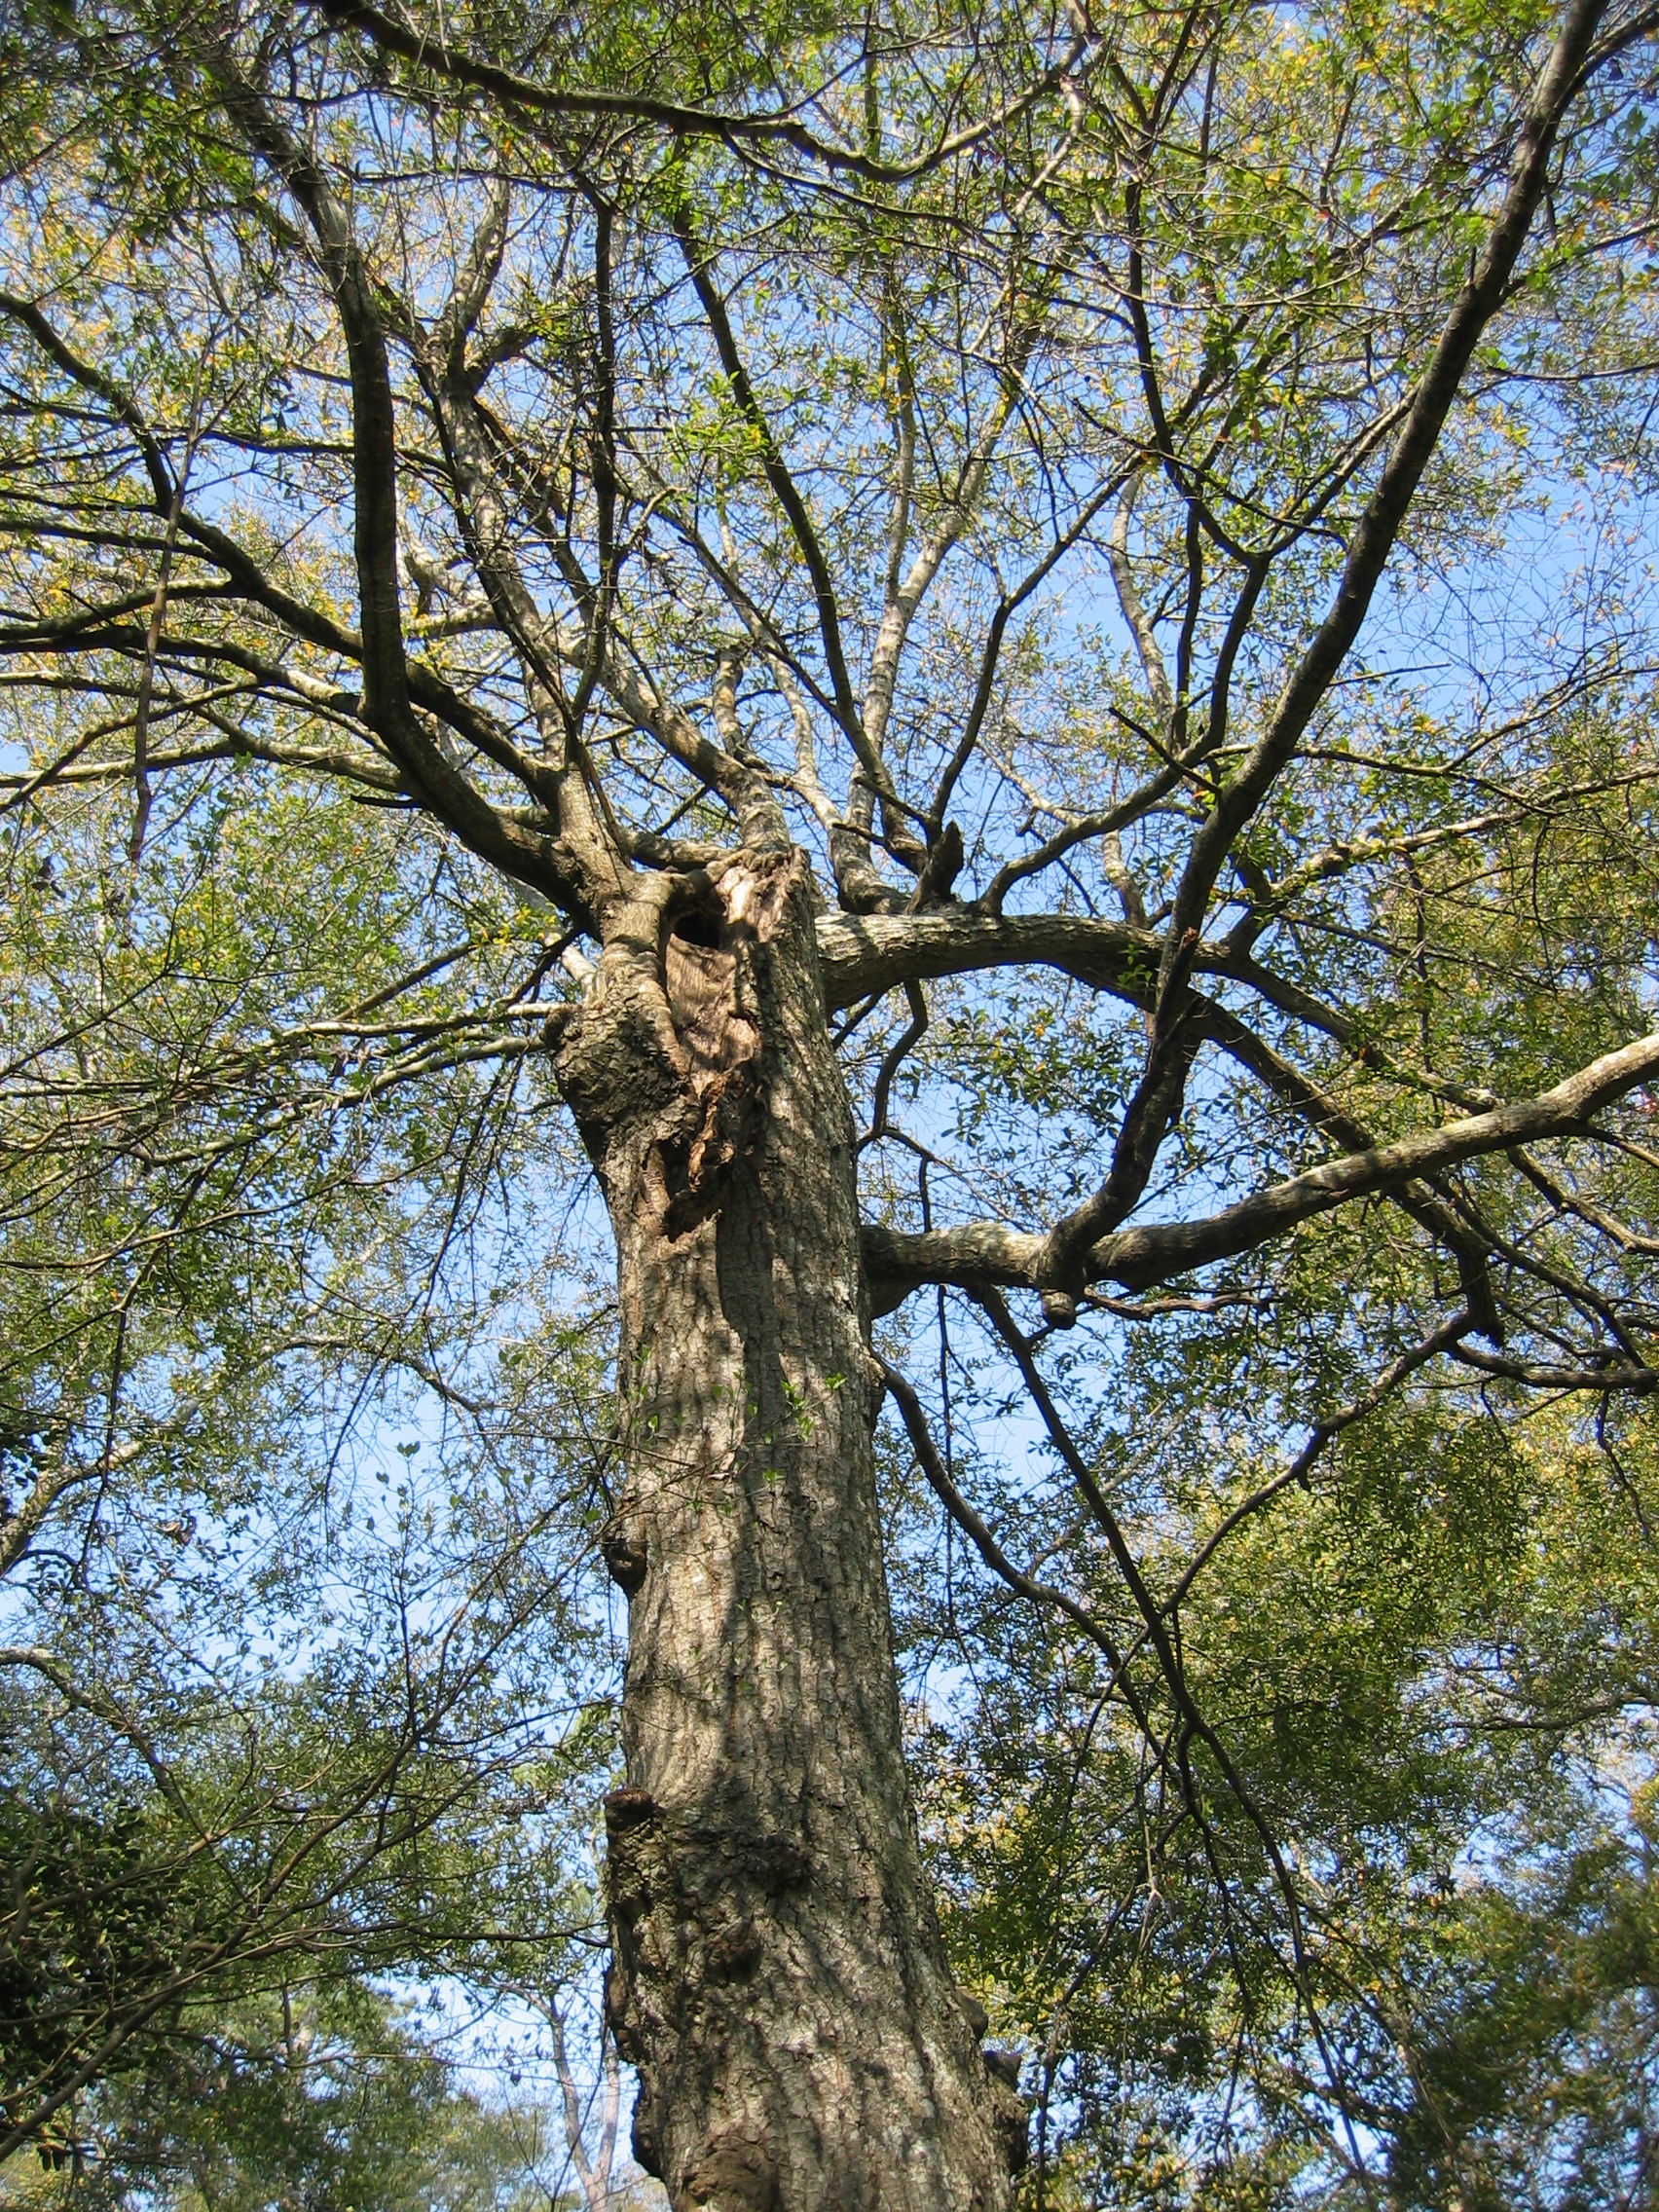 IMG_0087.JPG
Picture of oak in judys backyard